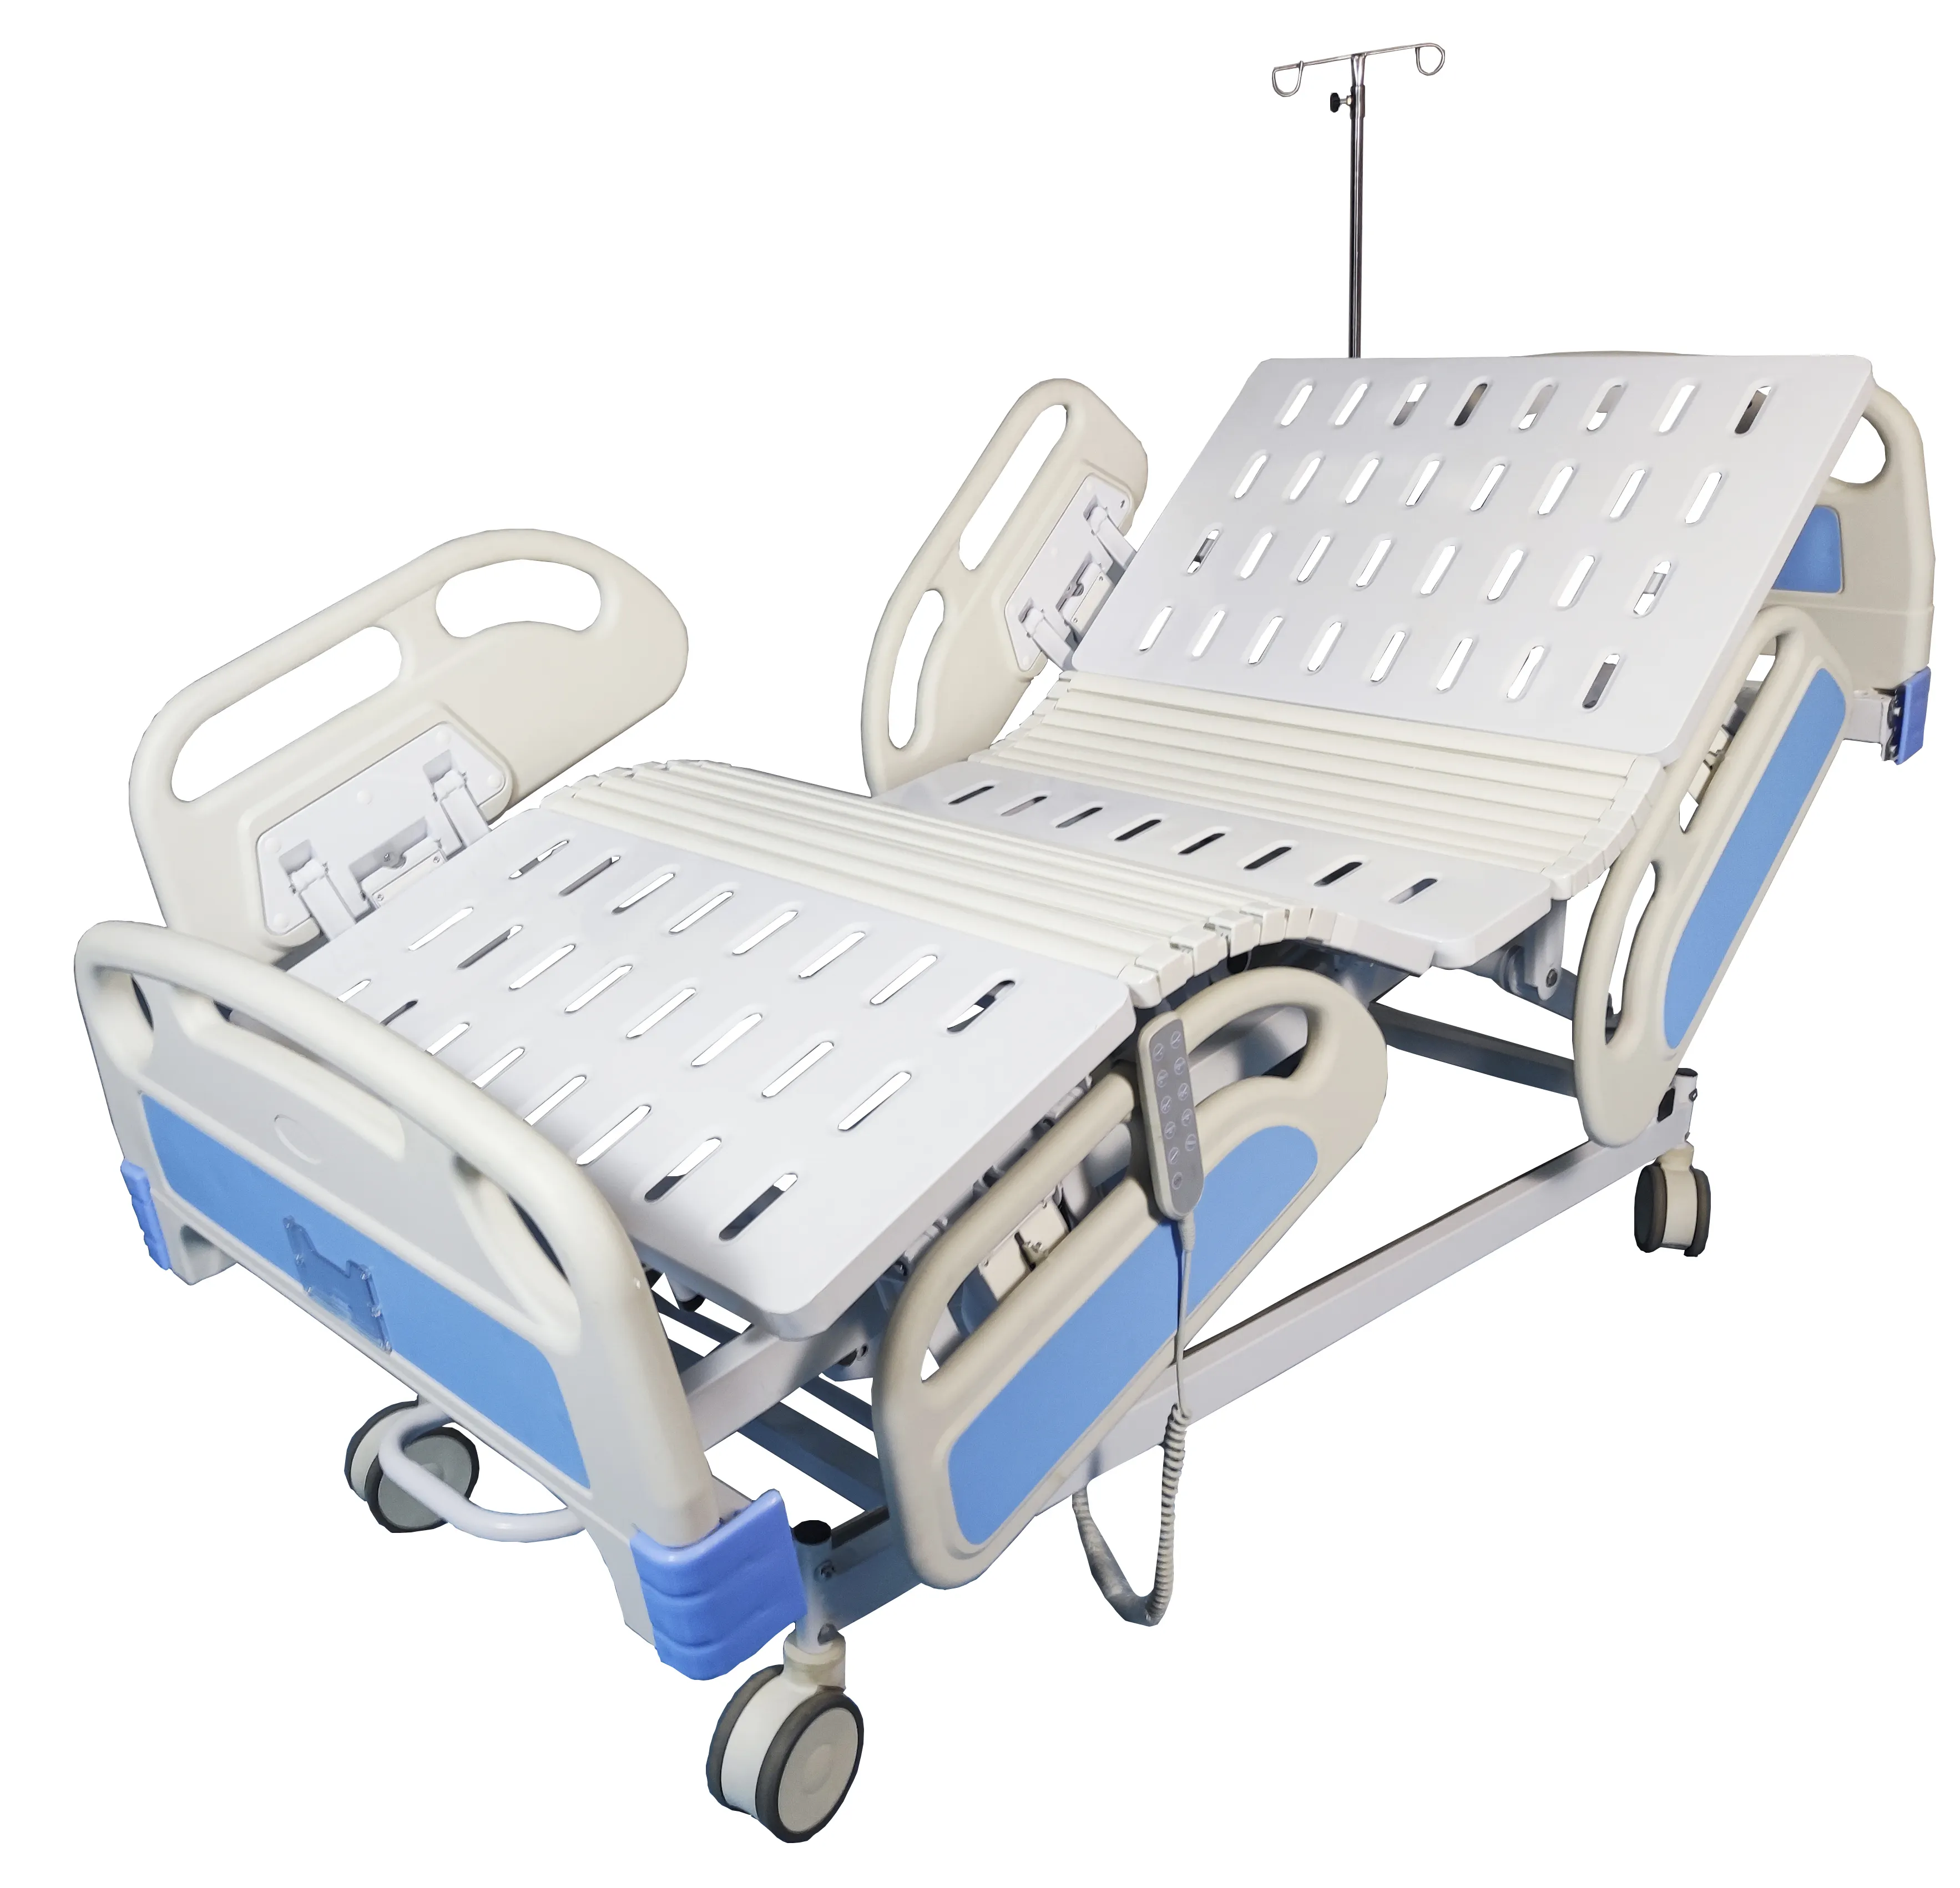 الأكثر مبيعًا 5 معدات متعددة الوظائف آلية مستشفى المريض المريض التلقائي كهربائي مع السكك الحديدية الجانبية البلاستيكية